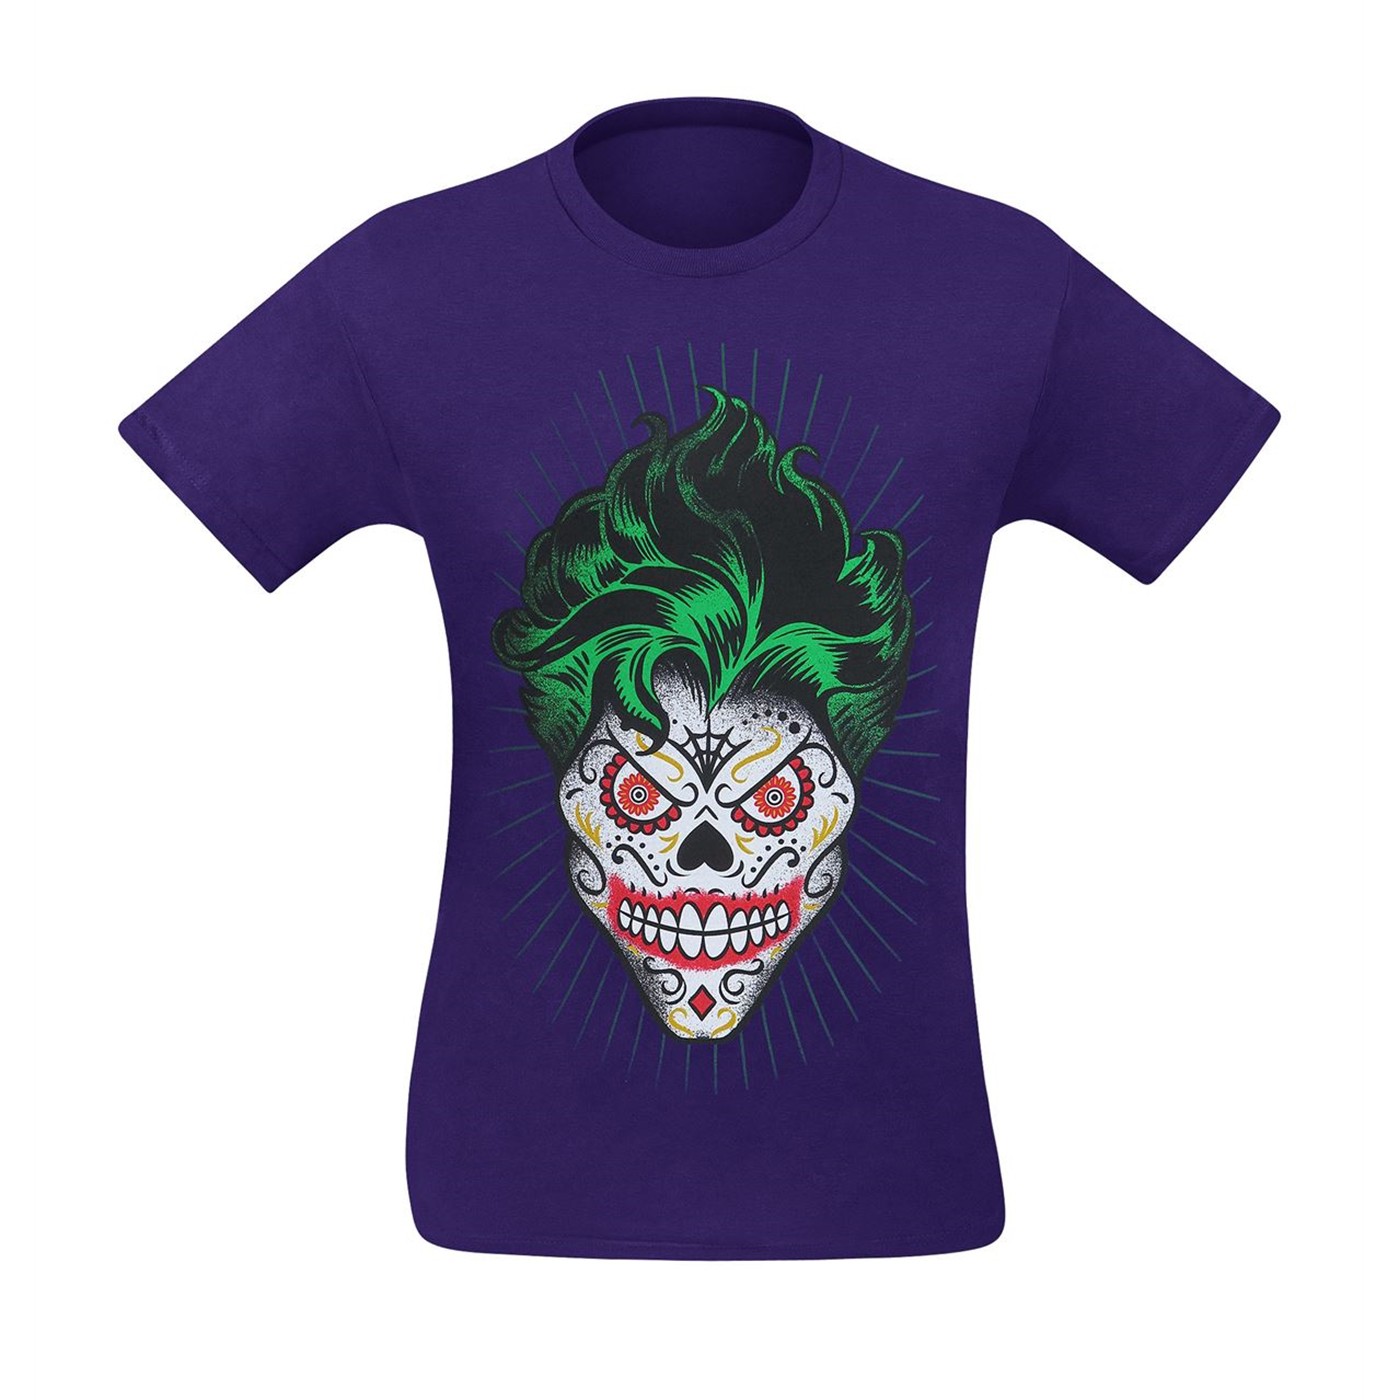 Joker Sugar Skull Men's T-Shirt